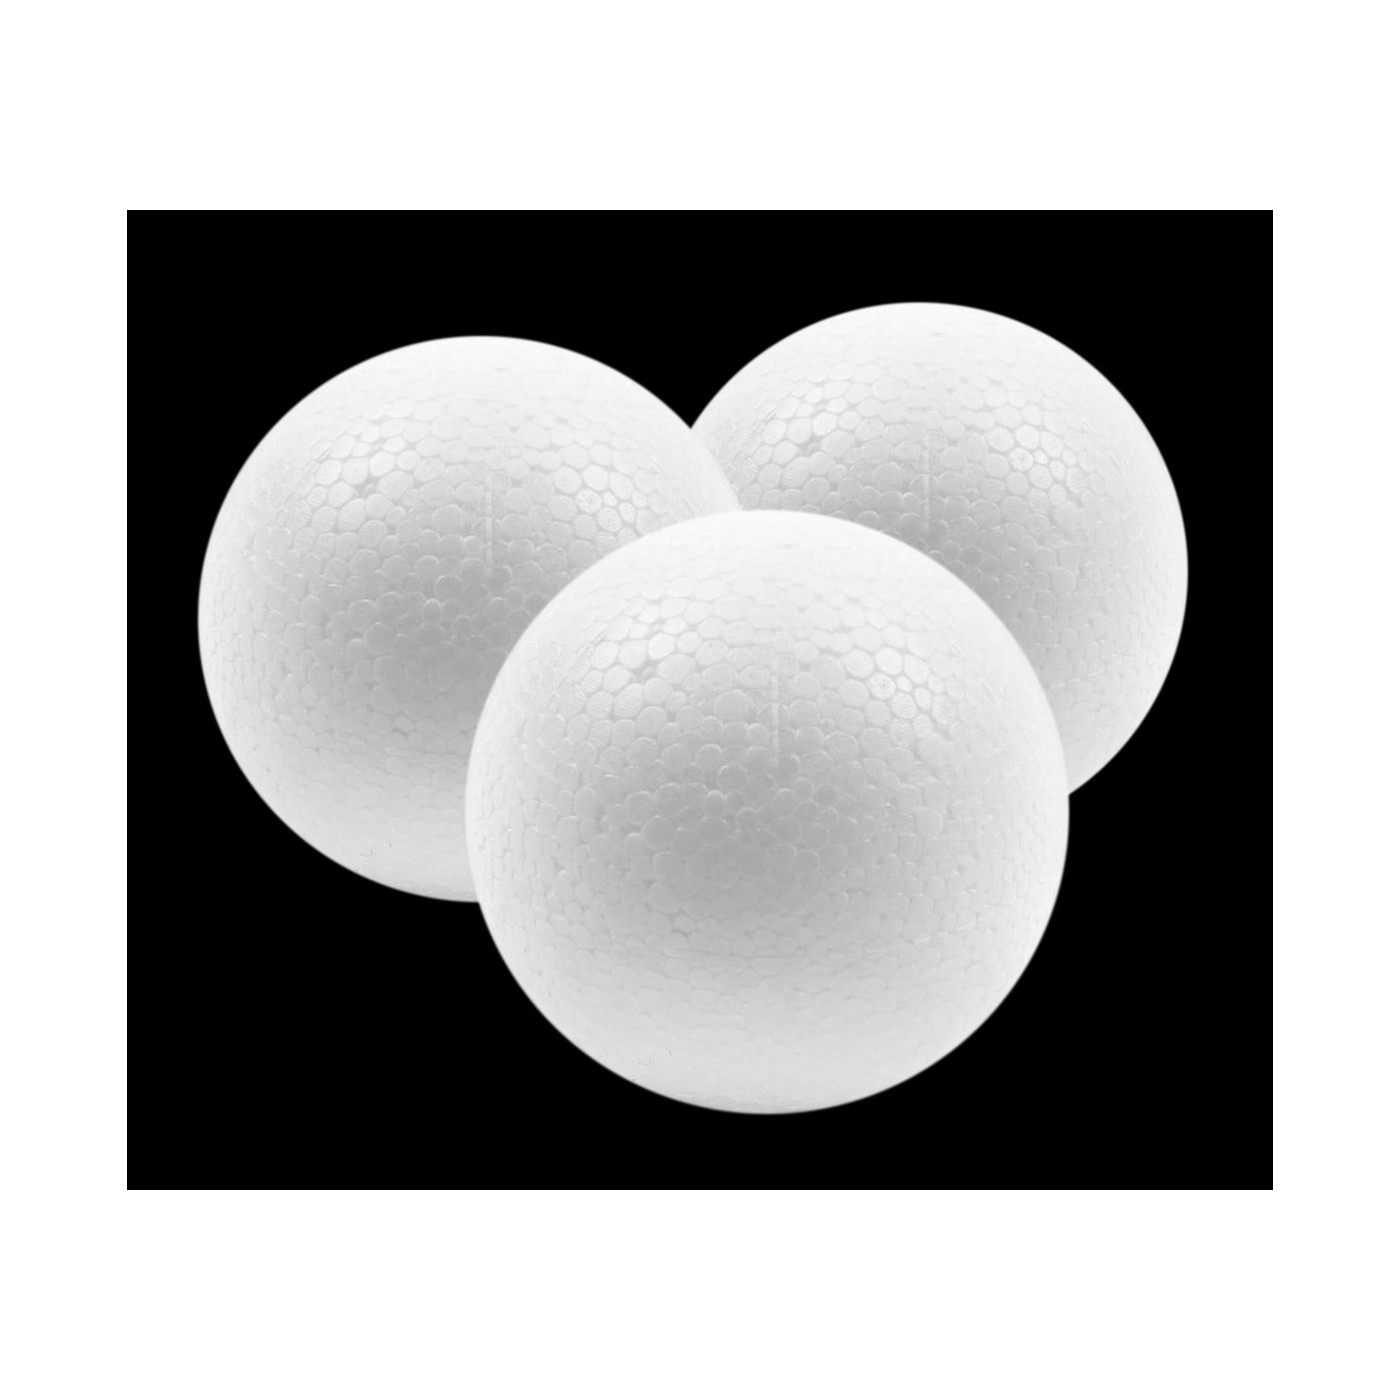 Set of 20 styrofoam shapes (ball, 5 cm diameter)